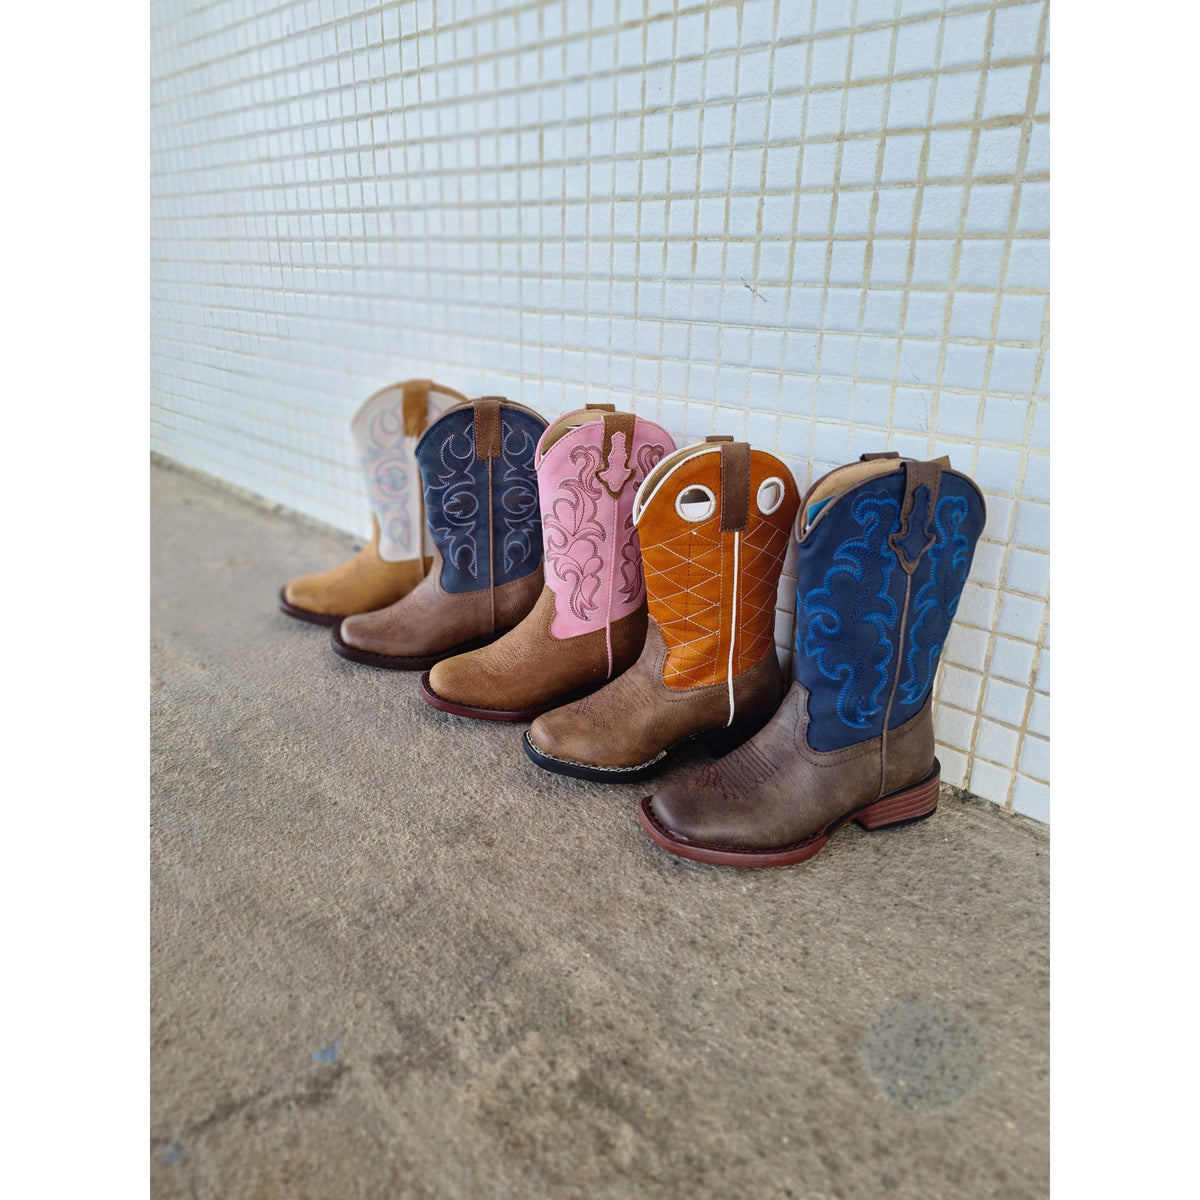 infant cowboy boots size 3